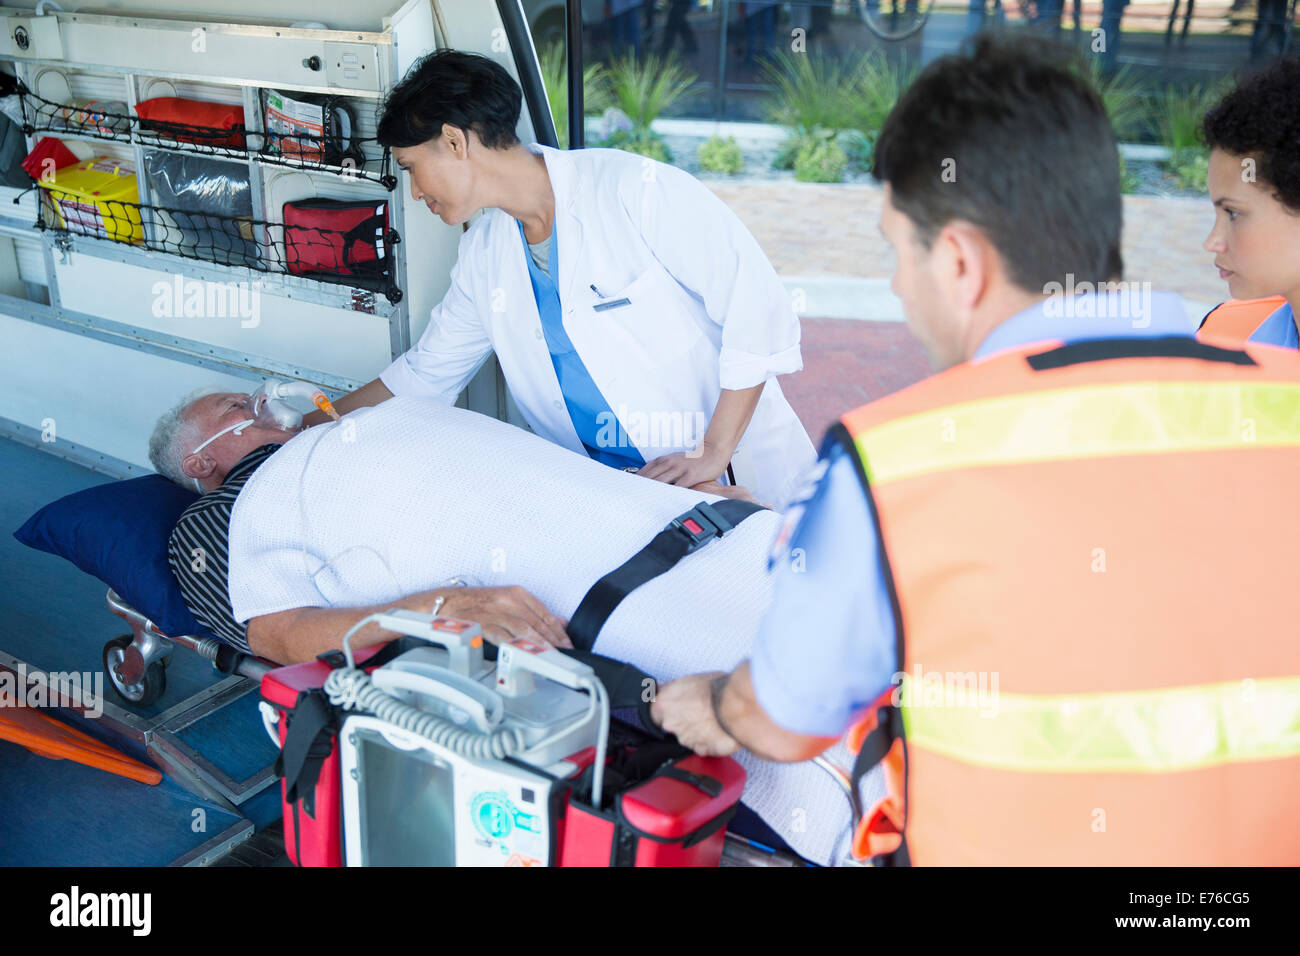 Esame medico paziente sulla barella ambulanza Foto Stock